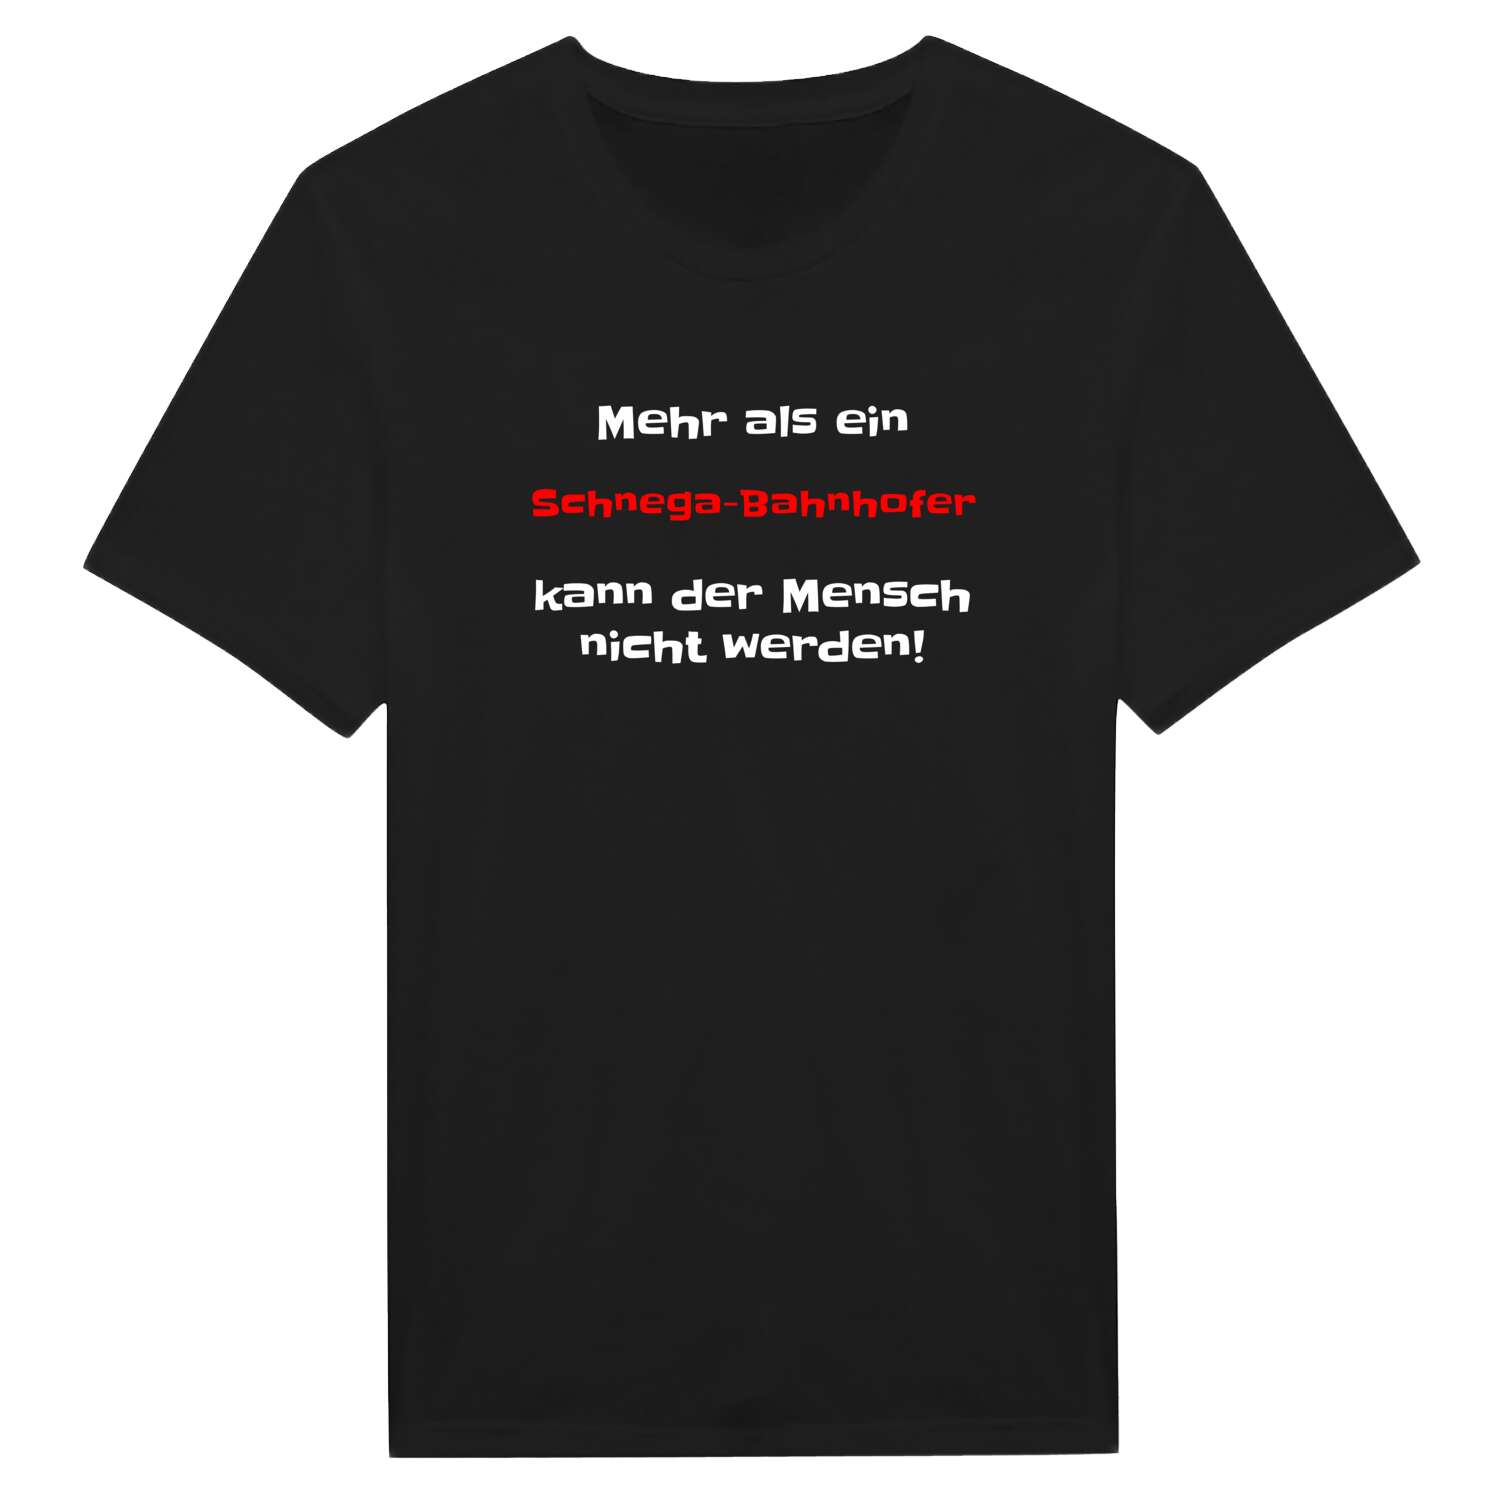 Schnega-Bahnhof T-Shirt »Mehr als ein«